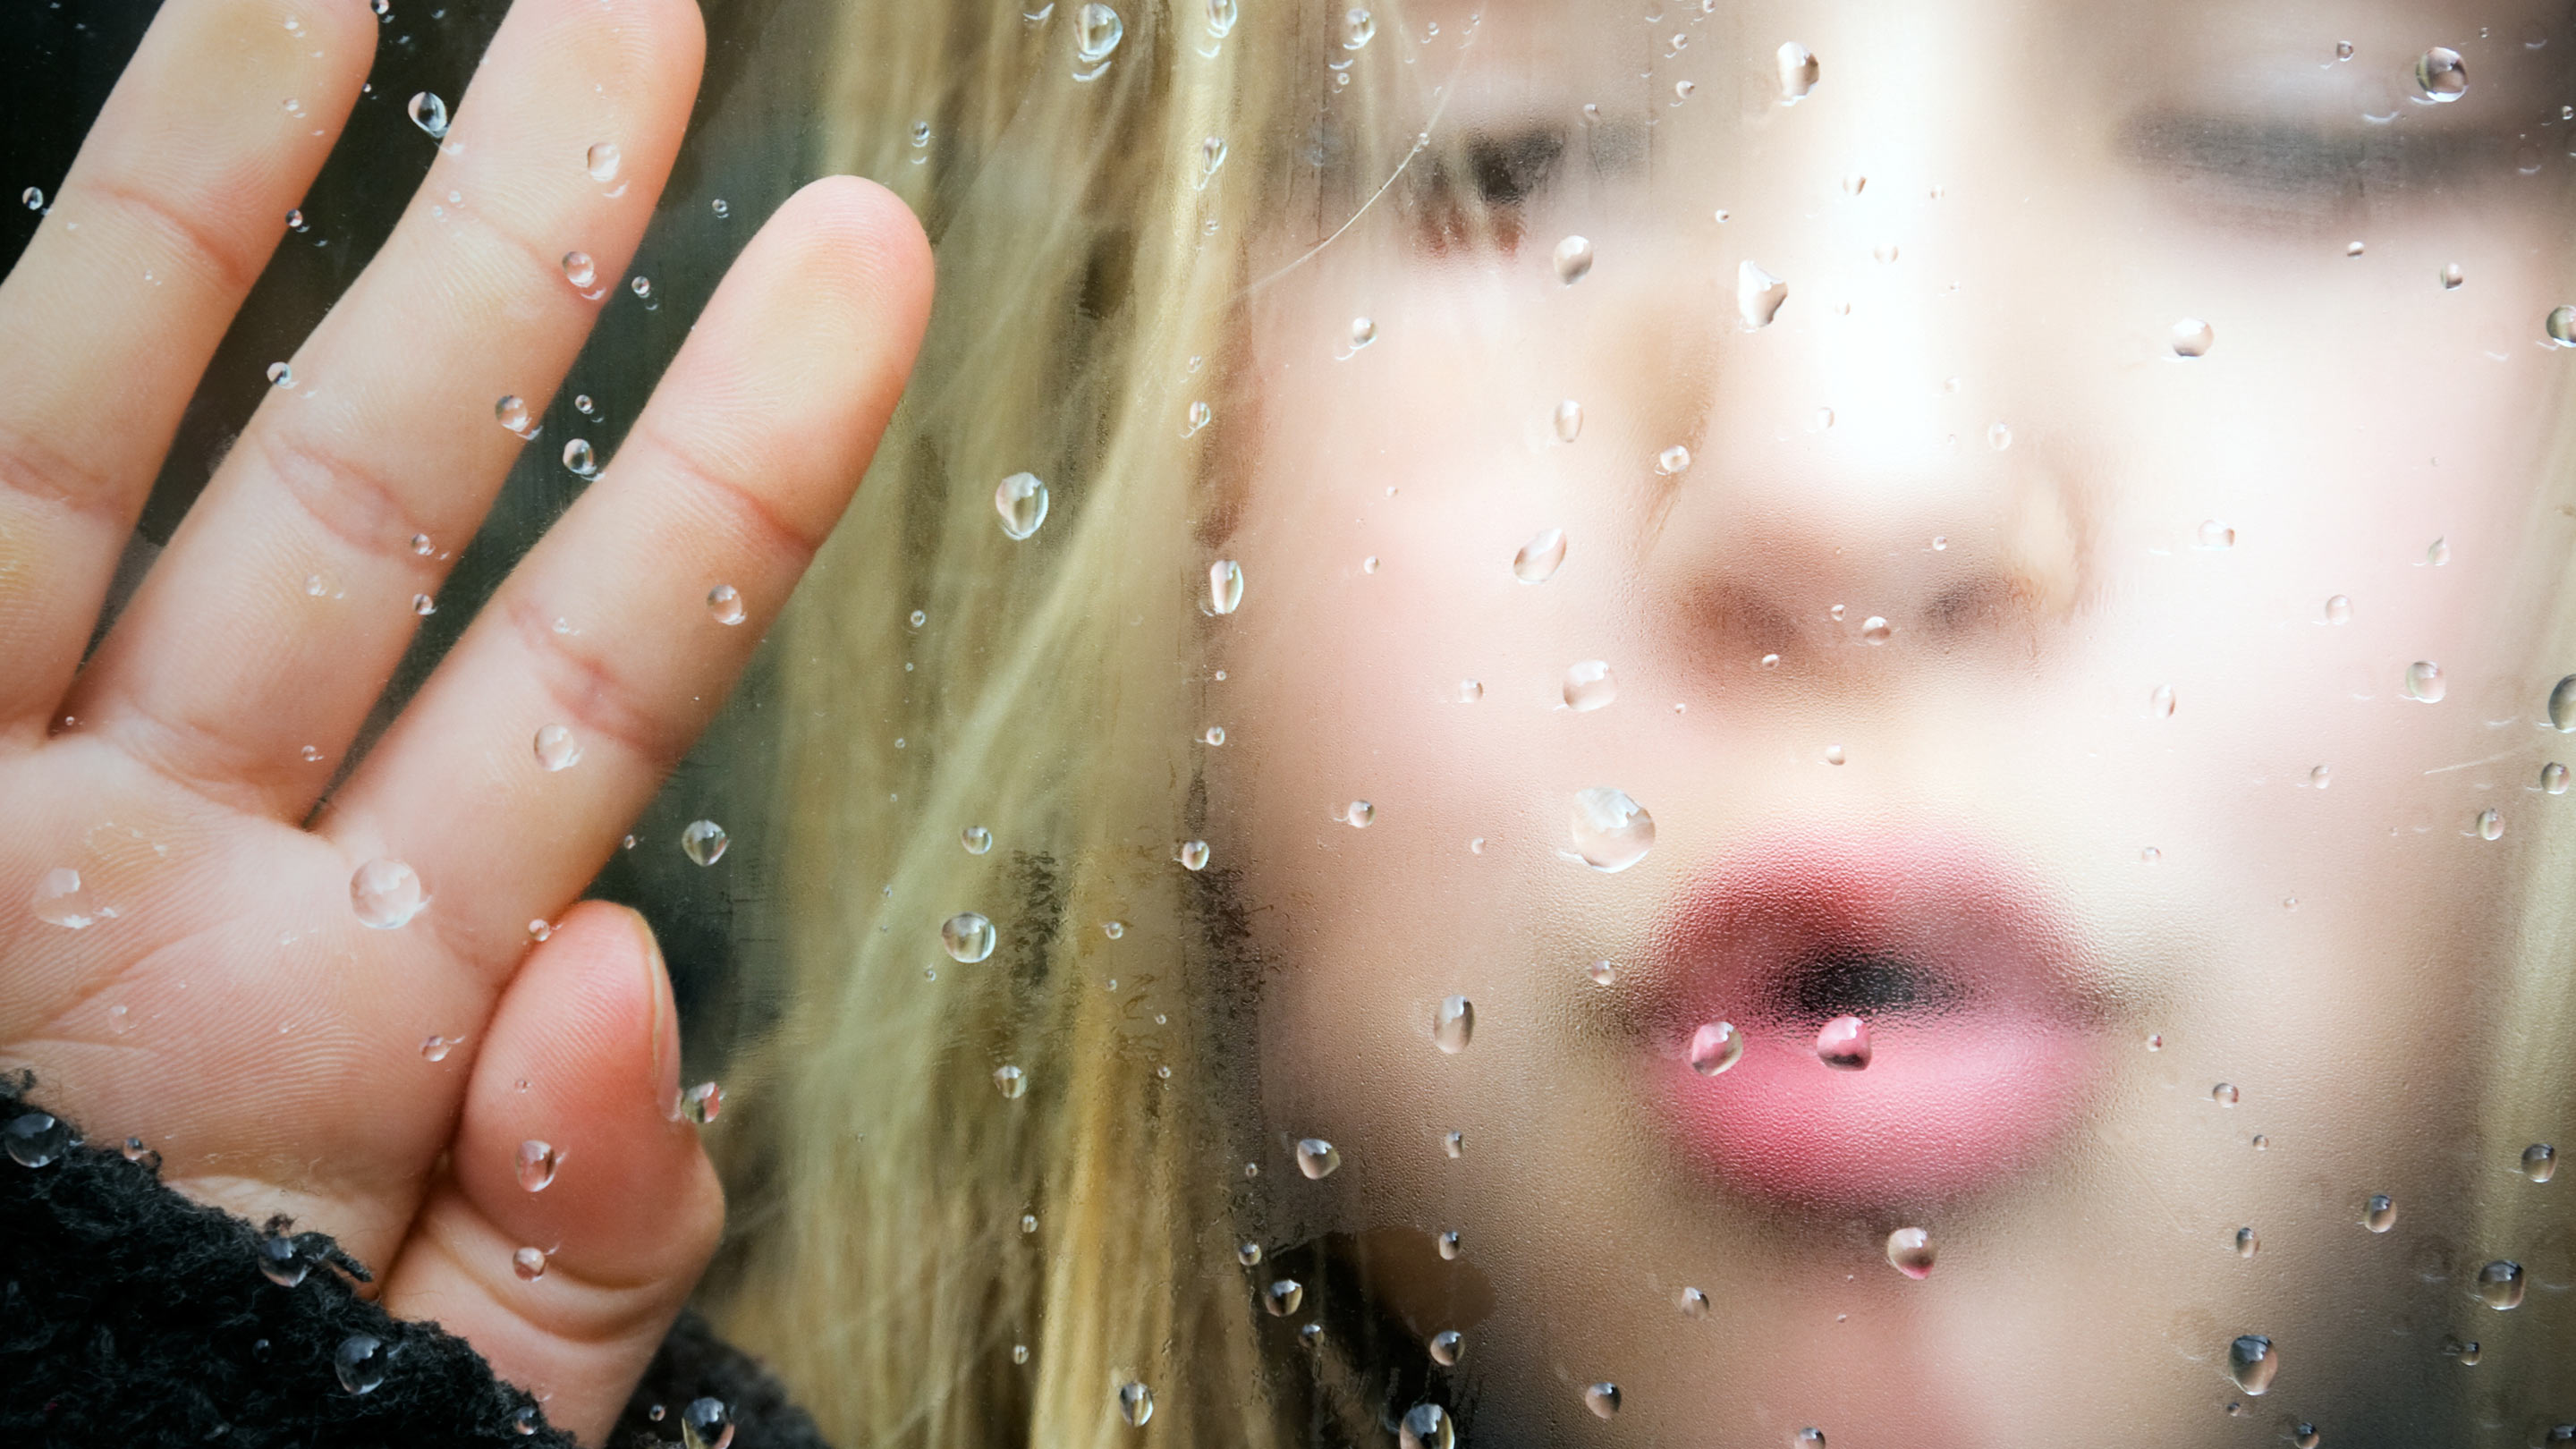 Mädchen bläst Luft gegen eine kalte Scheibe, an der Wasser kondensiert